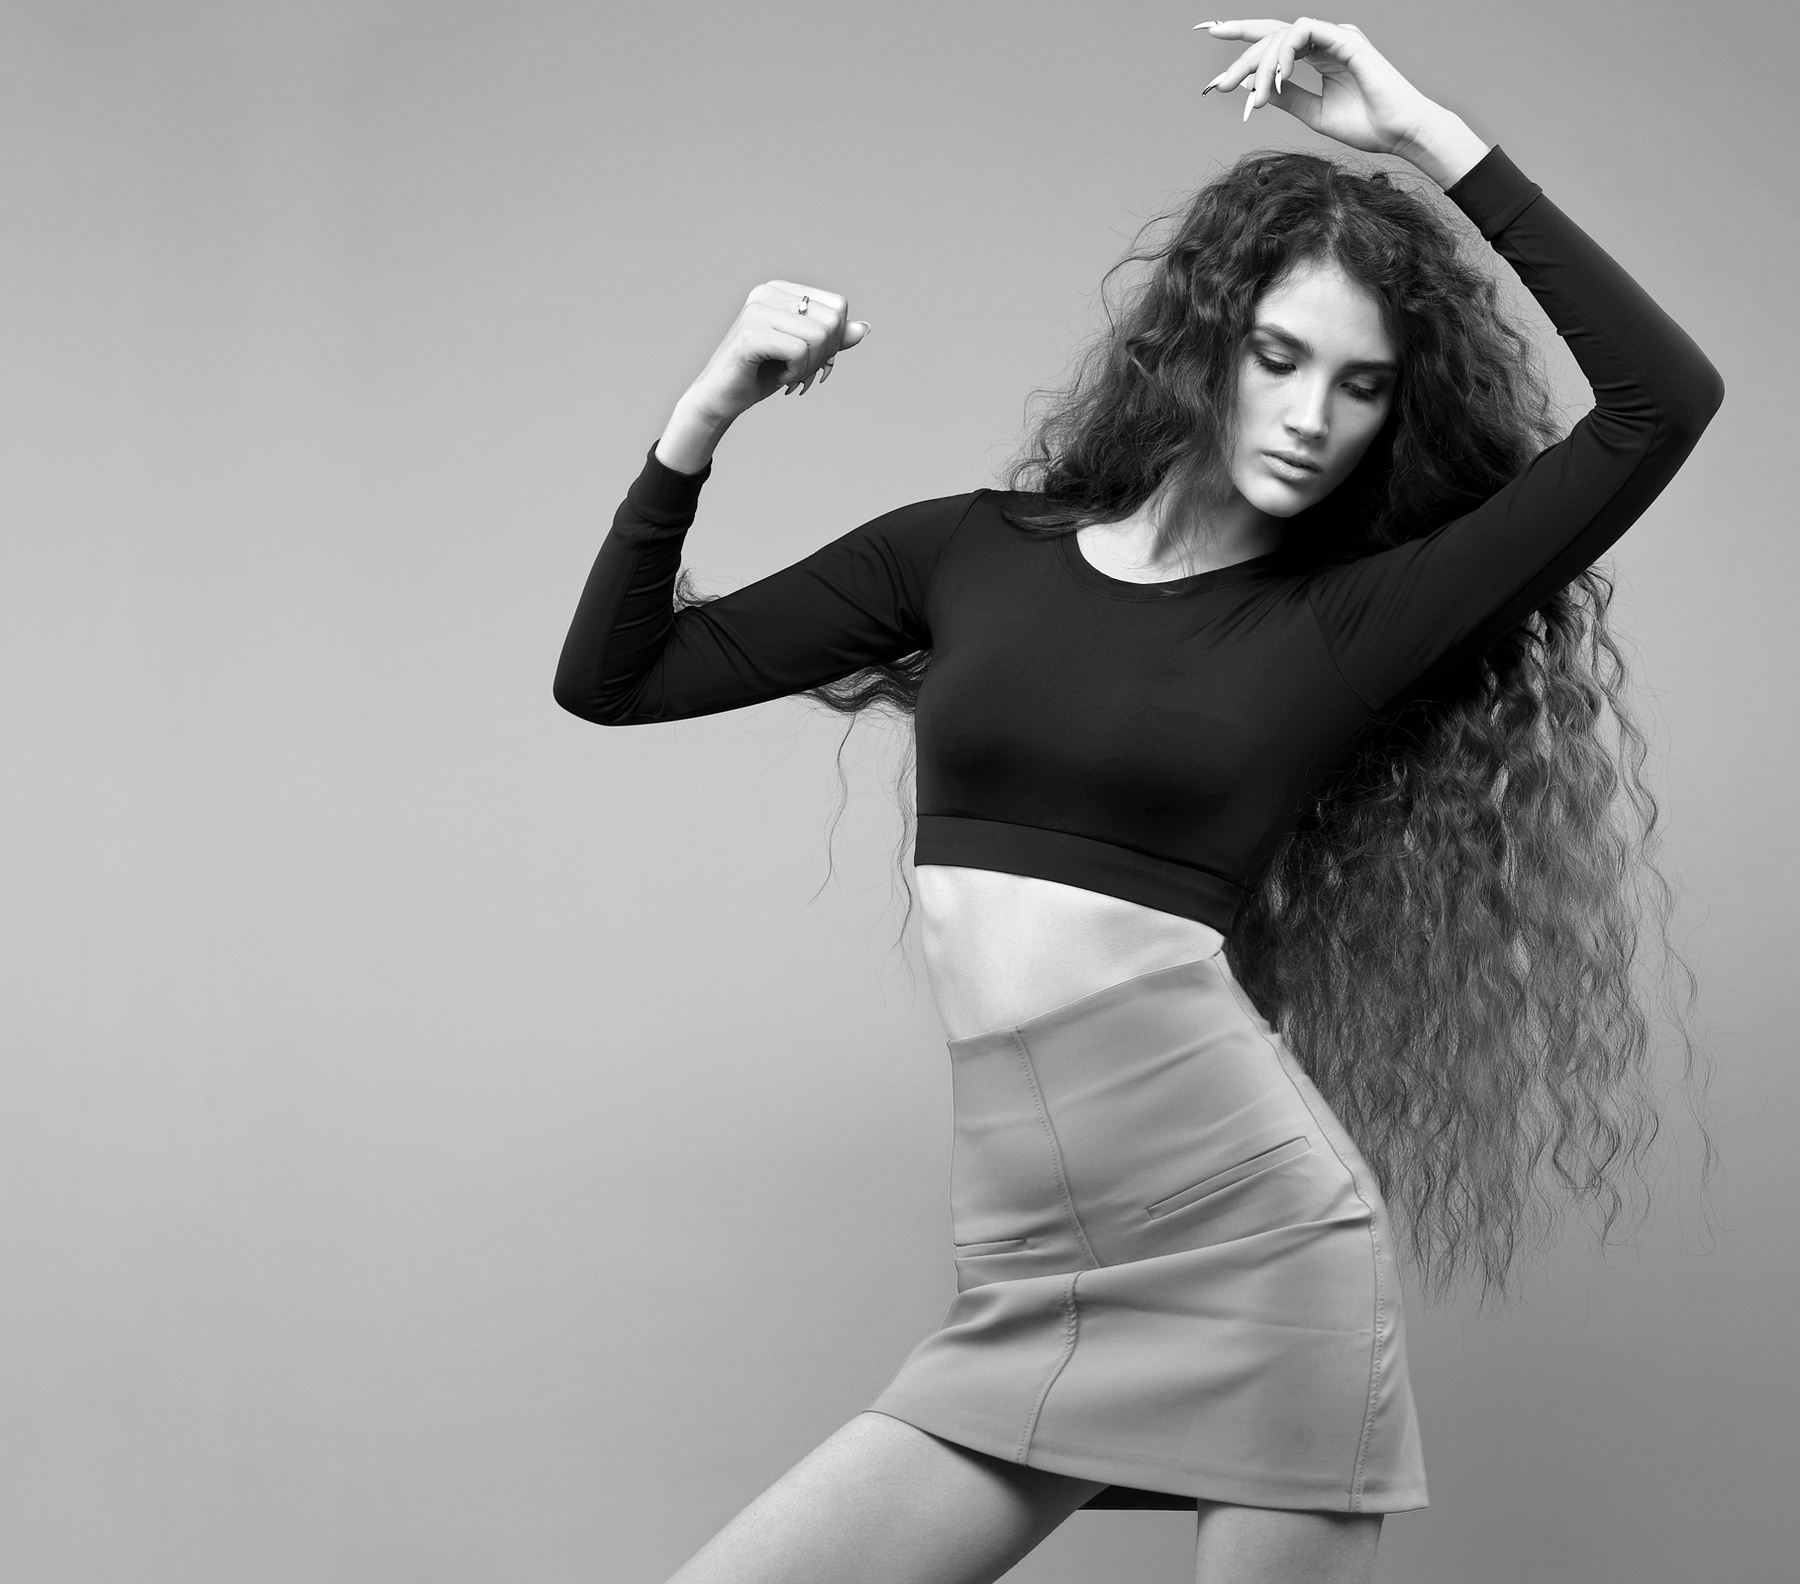 Черно-белый танец... Девушка женщина модель молодость танец движение черно-белое фото грация нежность